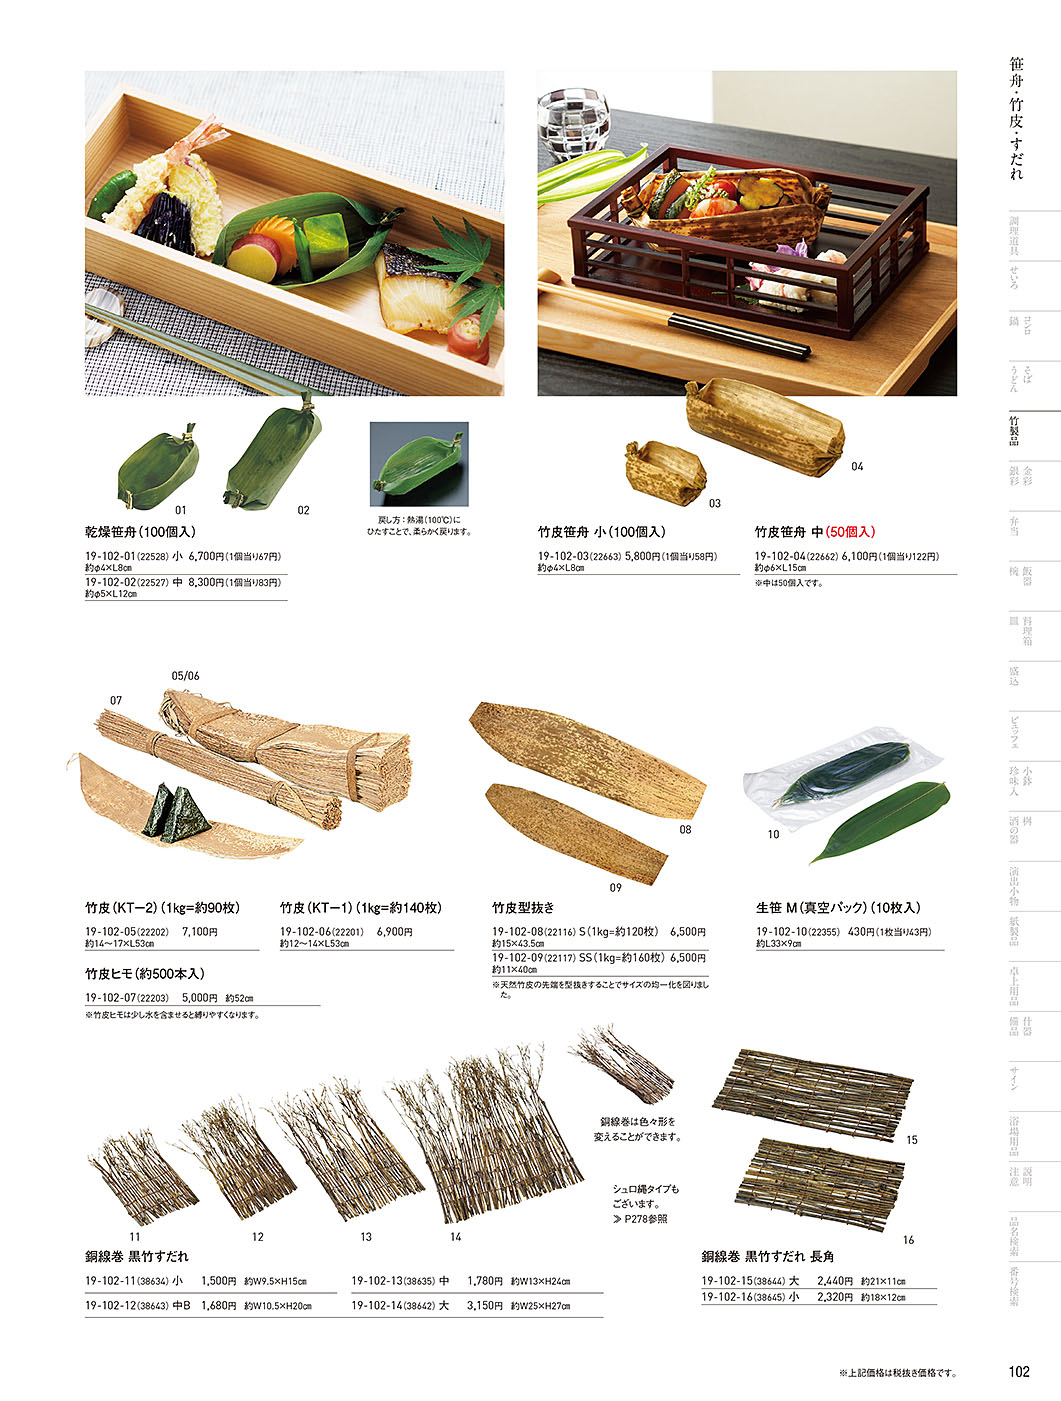 和食器カタログ P.102-竹製品／竹皮